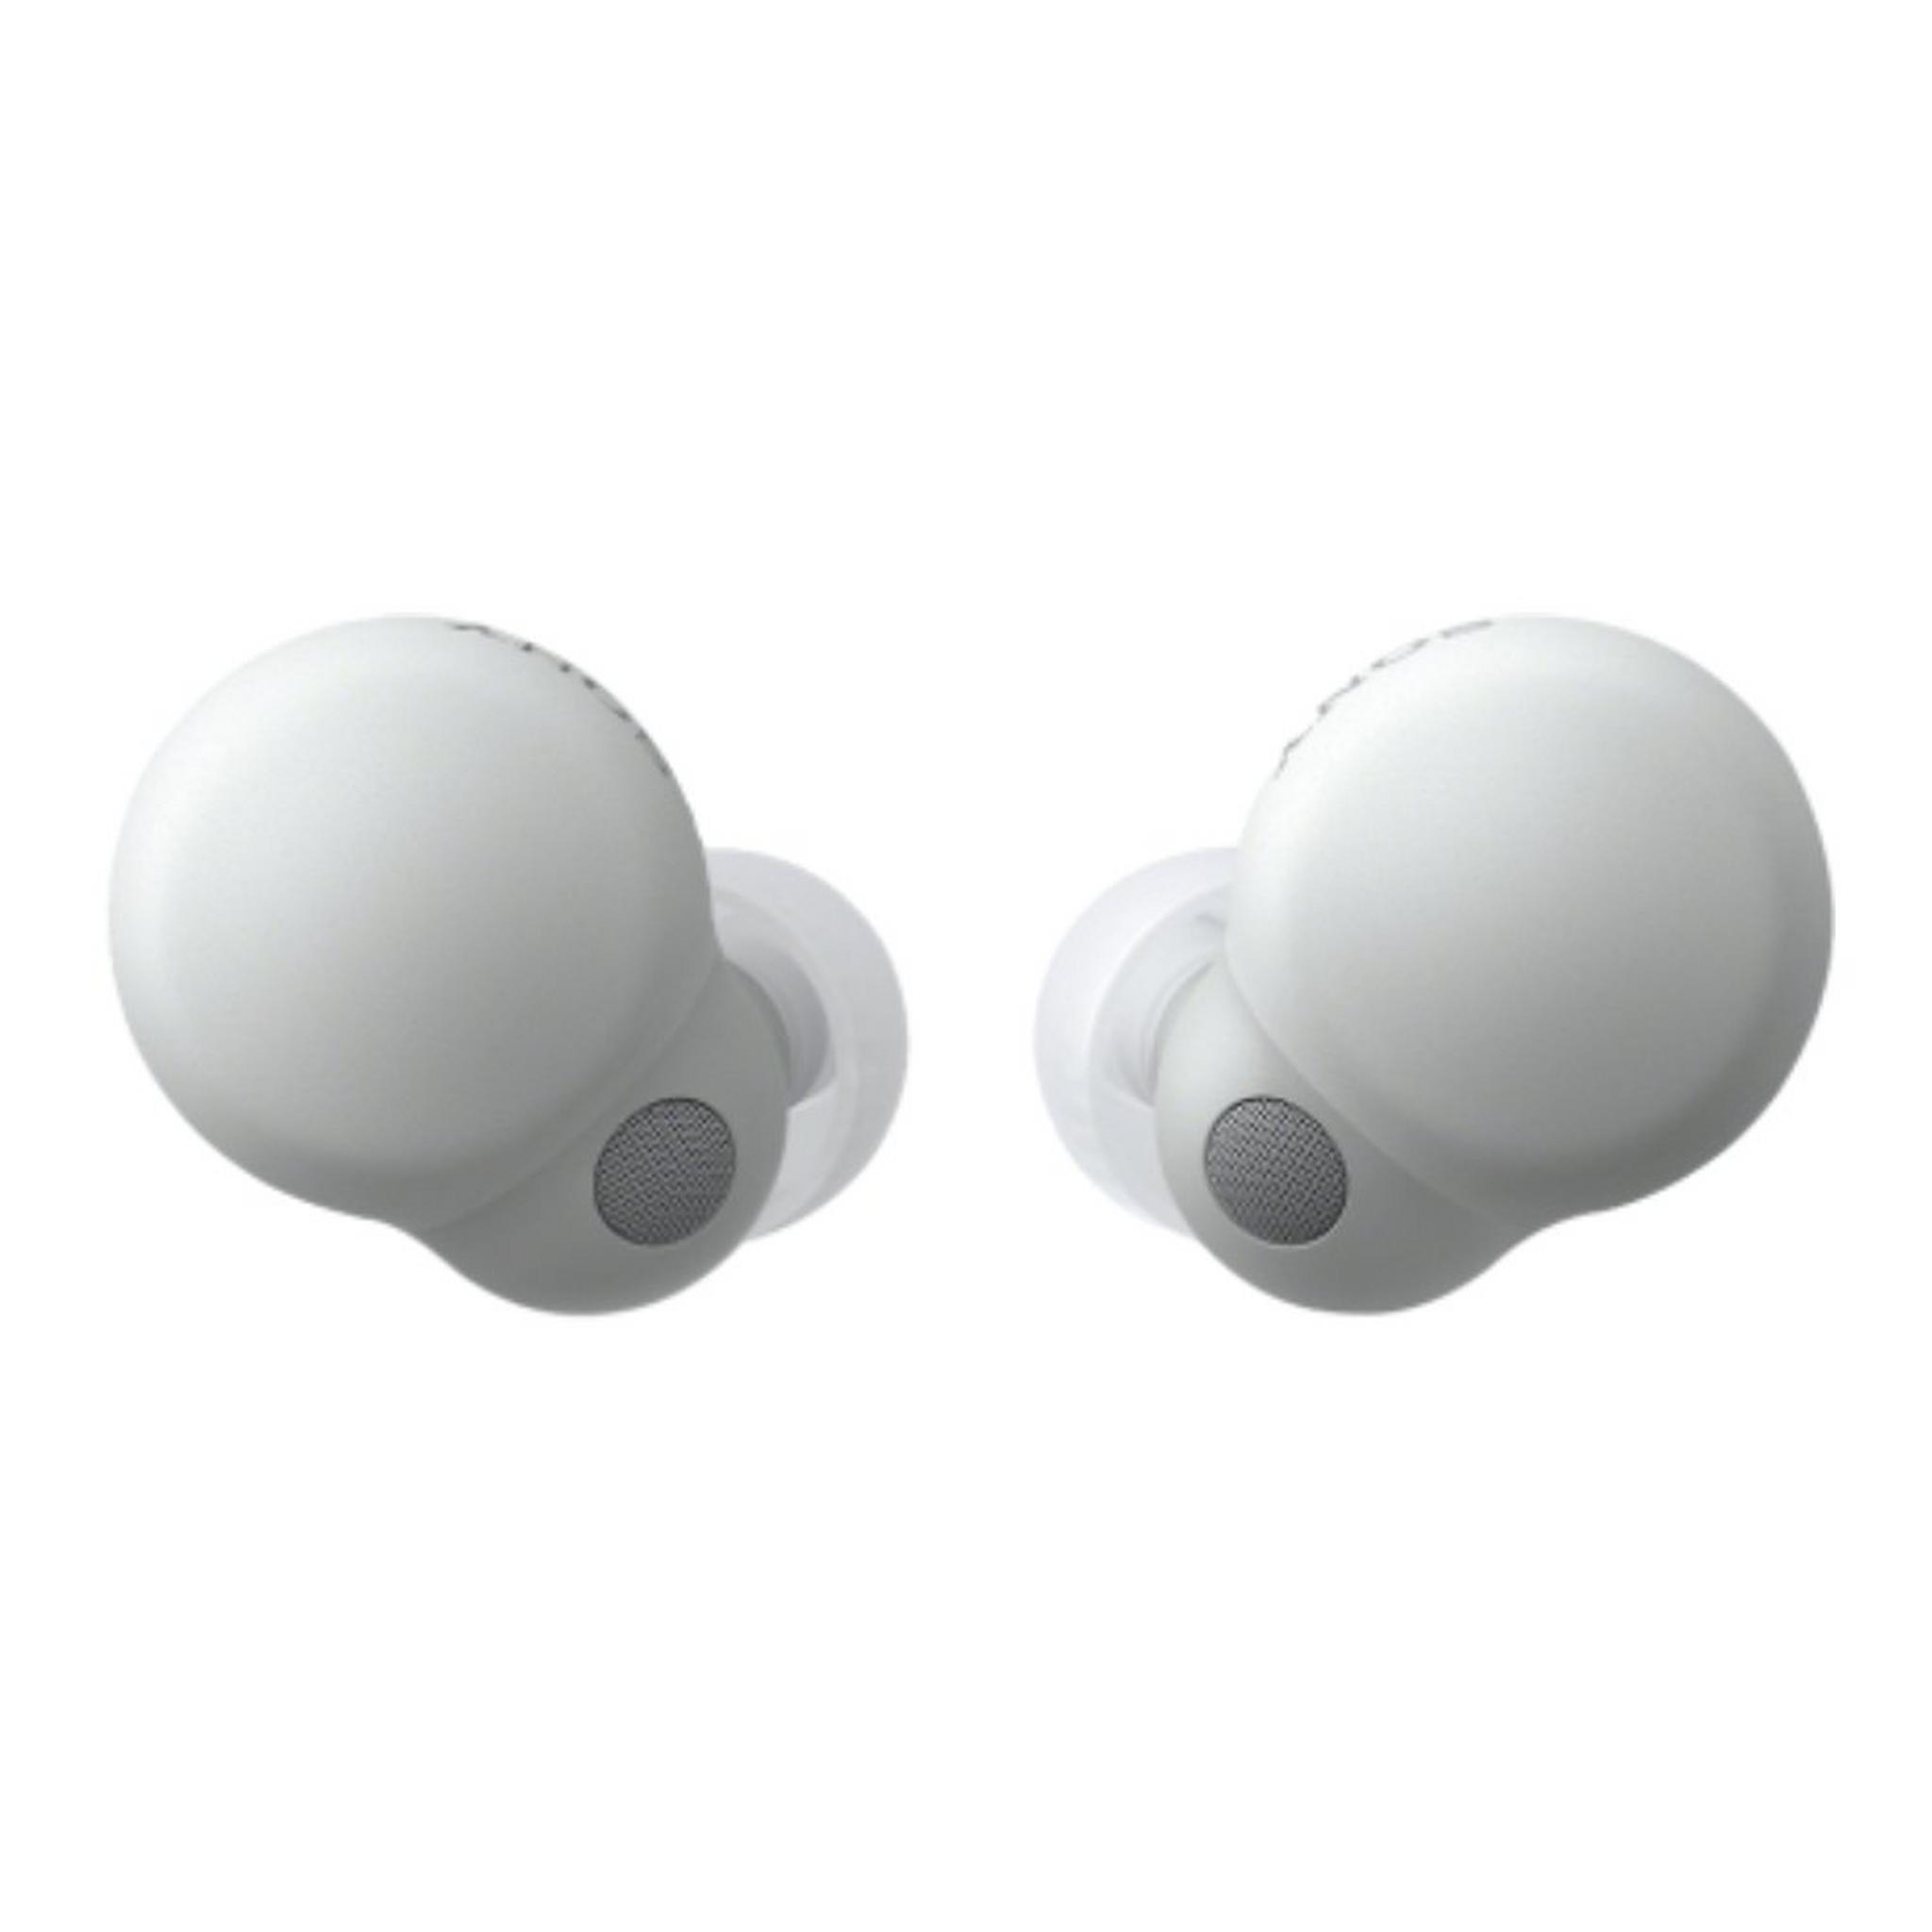 سماعات سوني لينك بادز لاسلكي حر بتقنية الغاء الضوضاء (WF-LS900N) - أبيض